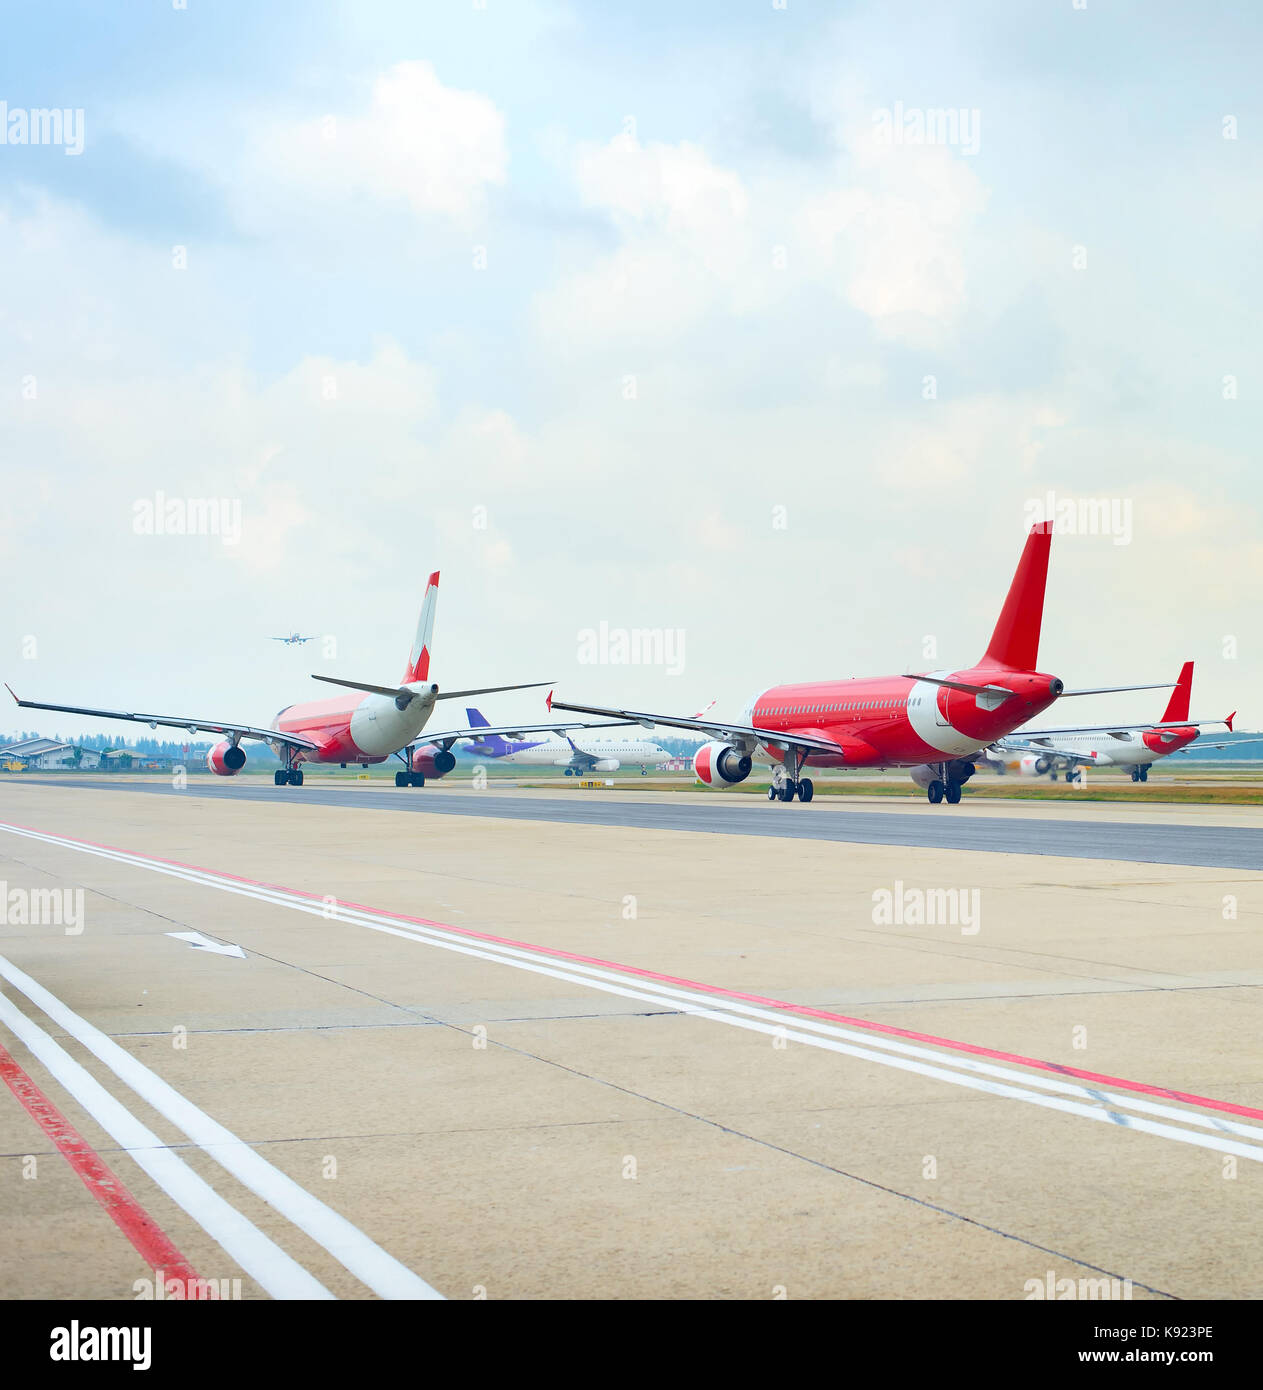 Los aviones en la pista de aterrizaje en un aeropuerto esperando el despegue Foto de stock